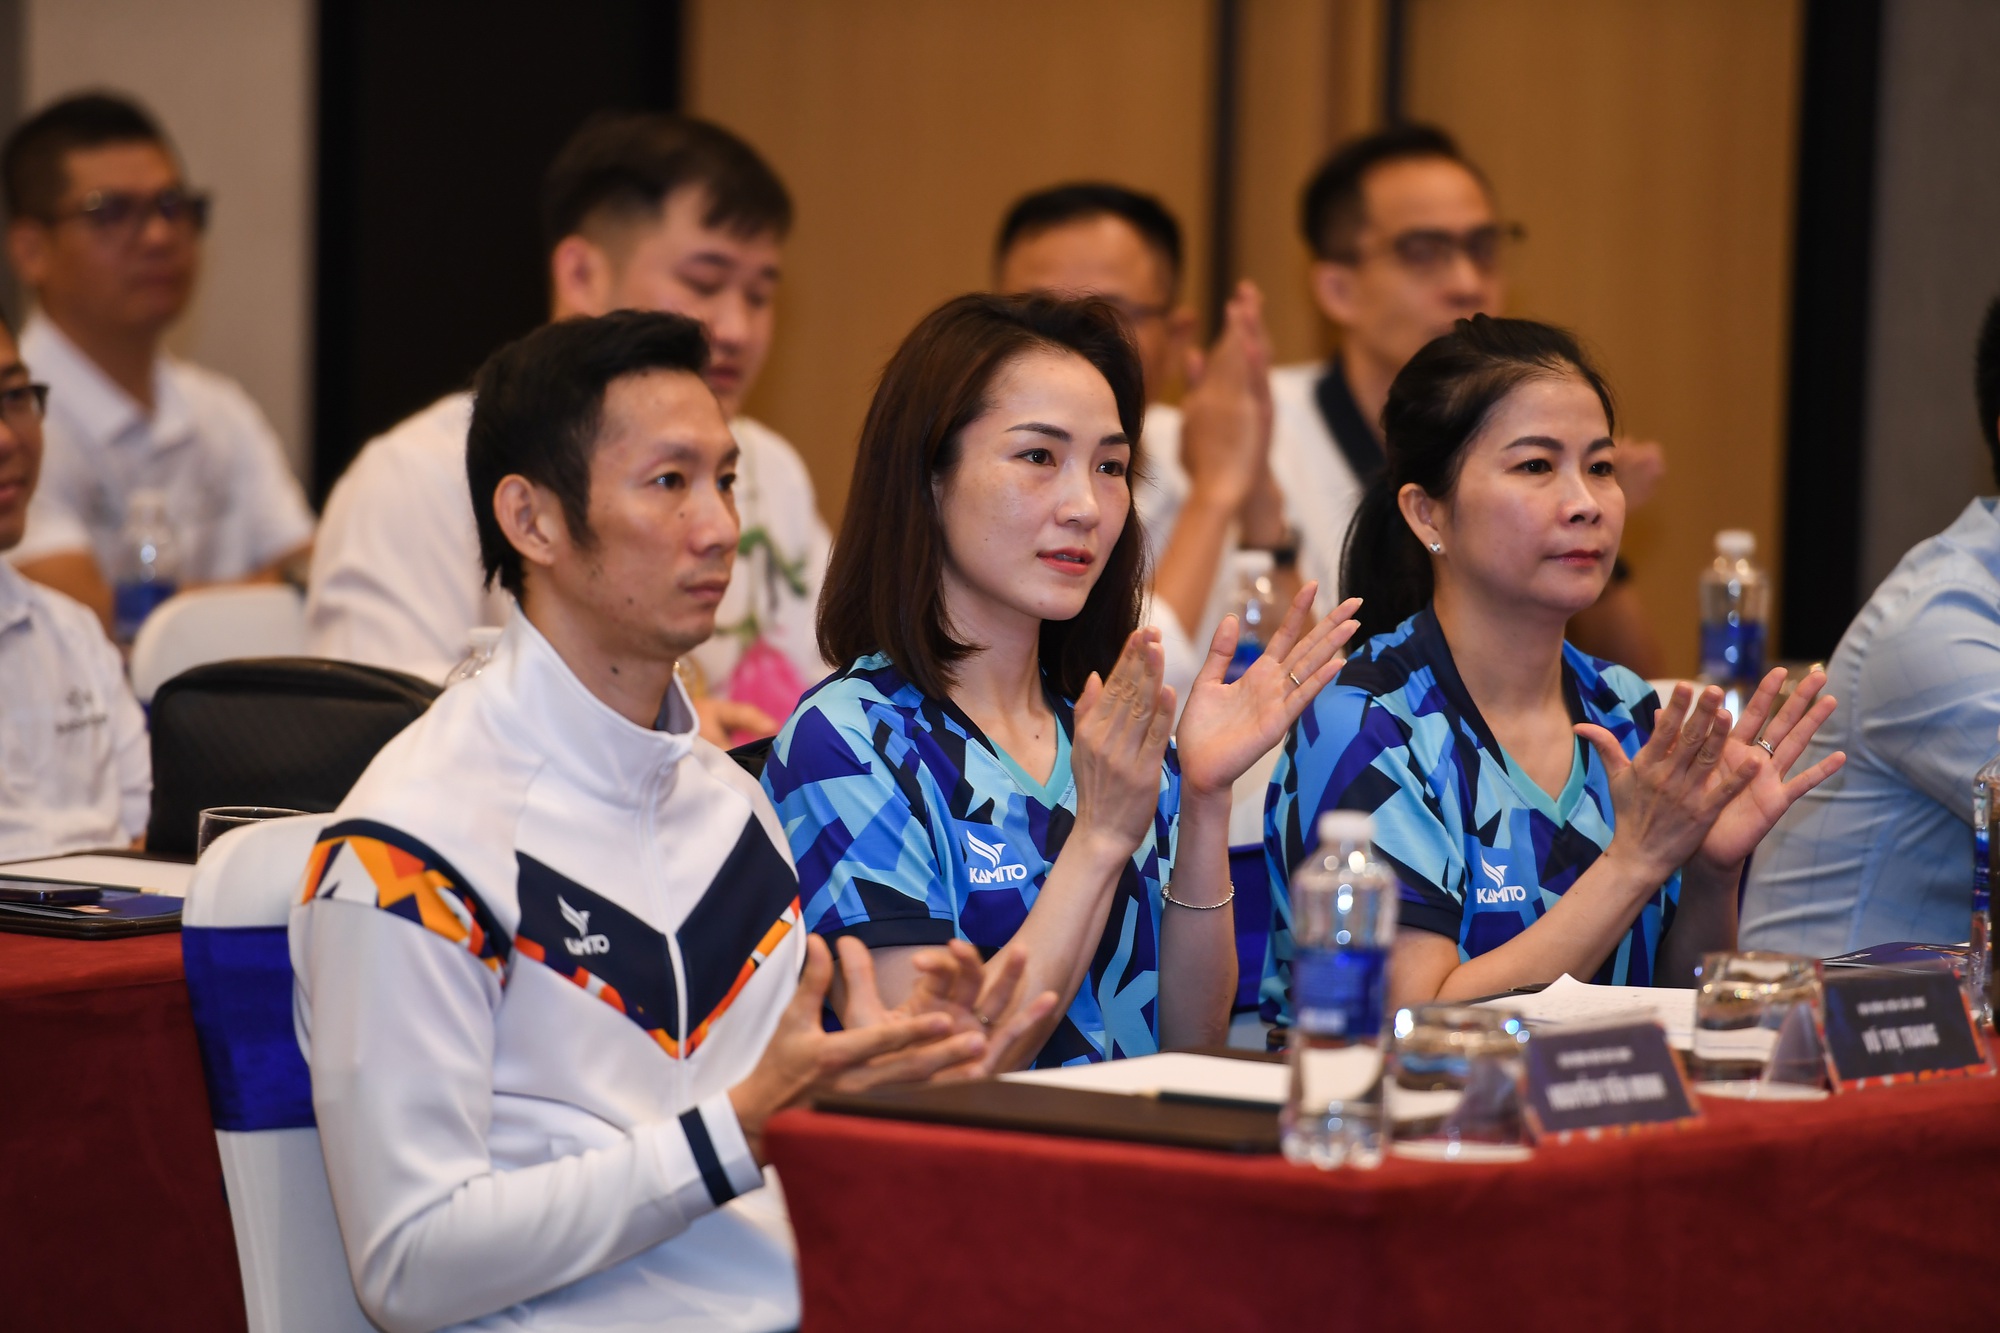 Huyền thoại cầu lông Việt Nam Nguyễn Tiến Minh làm đại sứ thương hiệu Kamito, ra mắt BST TM LEGEND - Ảnh 2.